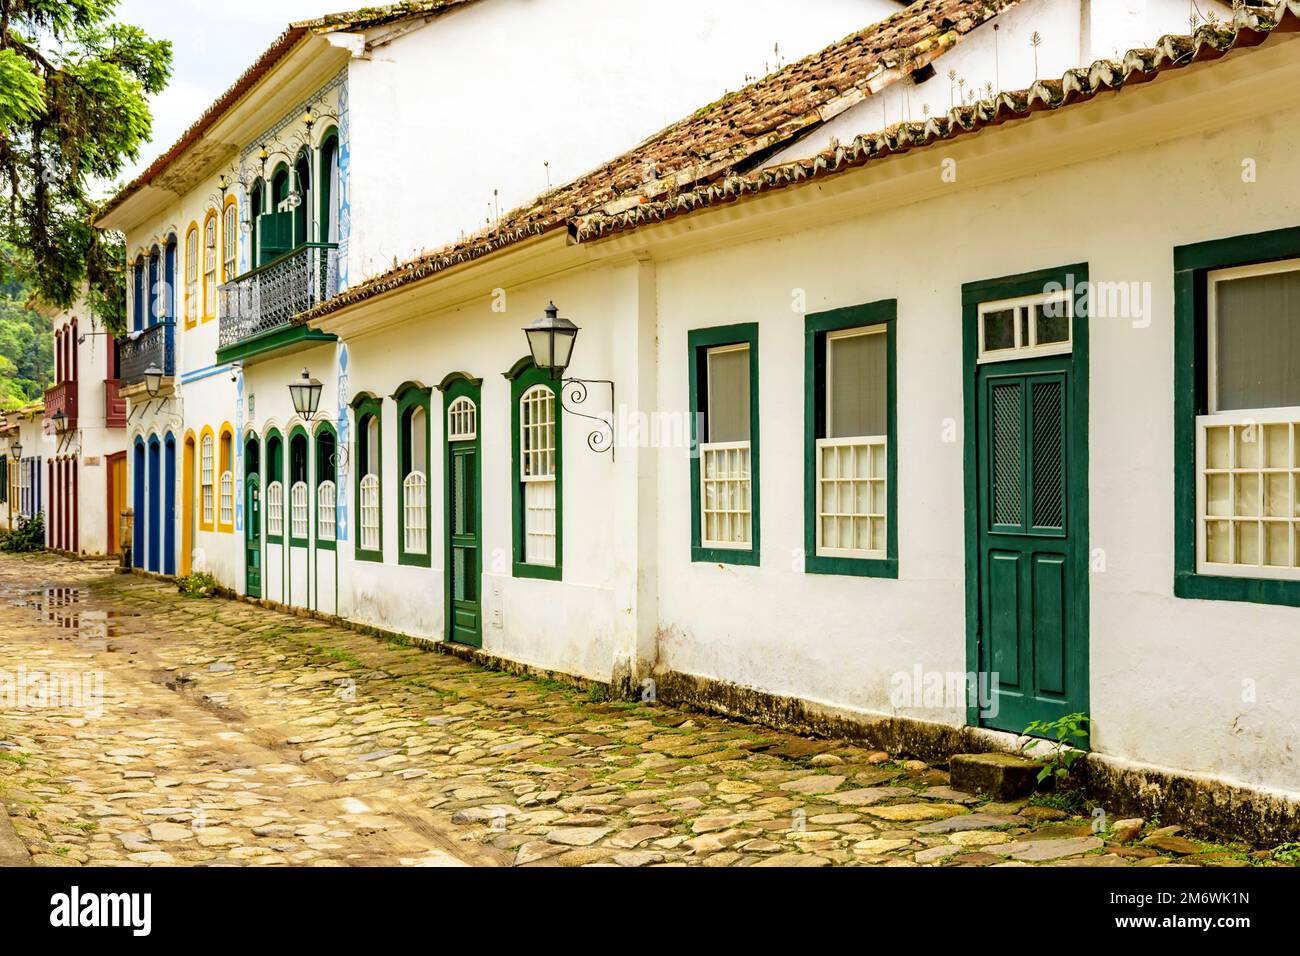 Calle bucólica con adoquines y casas históricas de estilo colonial en la ciudad de Paraty Foto de stock